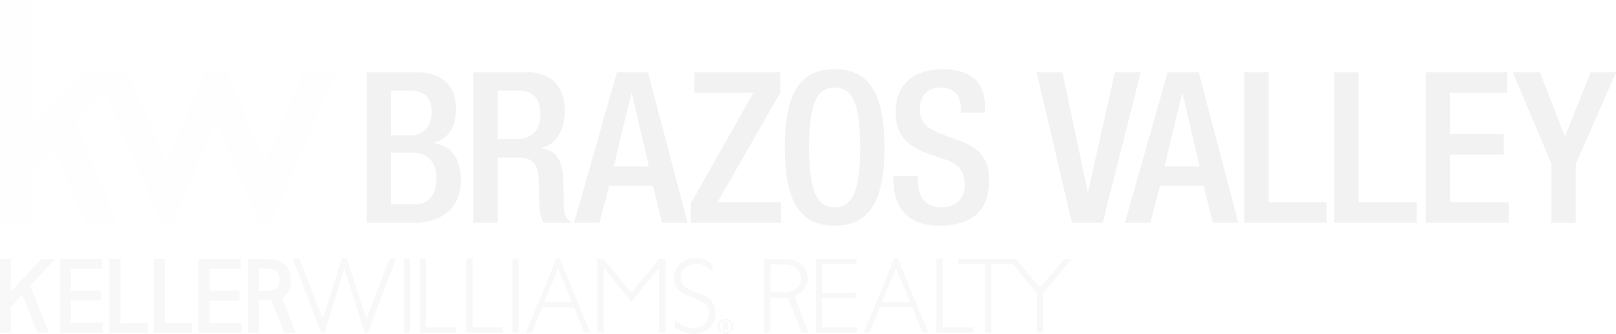 KellerWilliams_Realty_BrazosValley_Logo_white